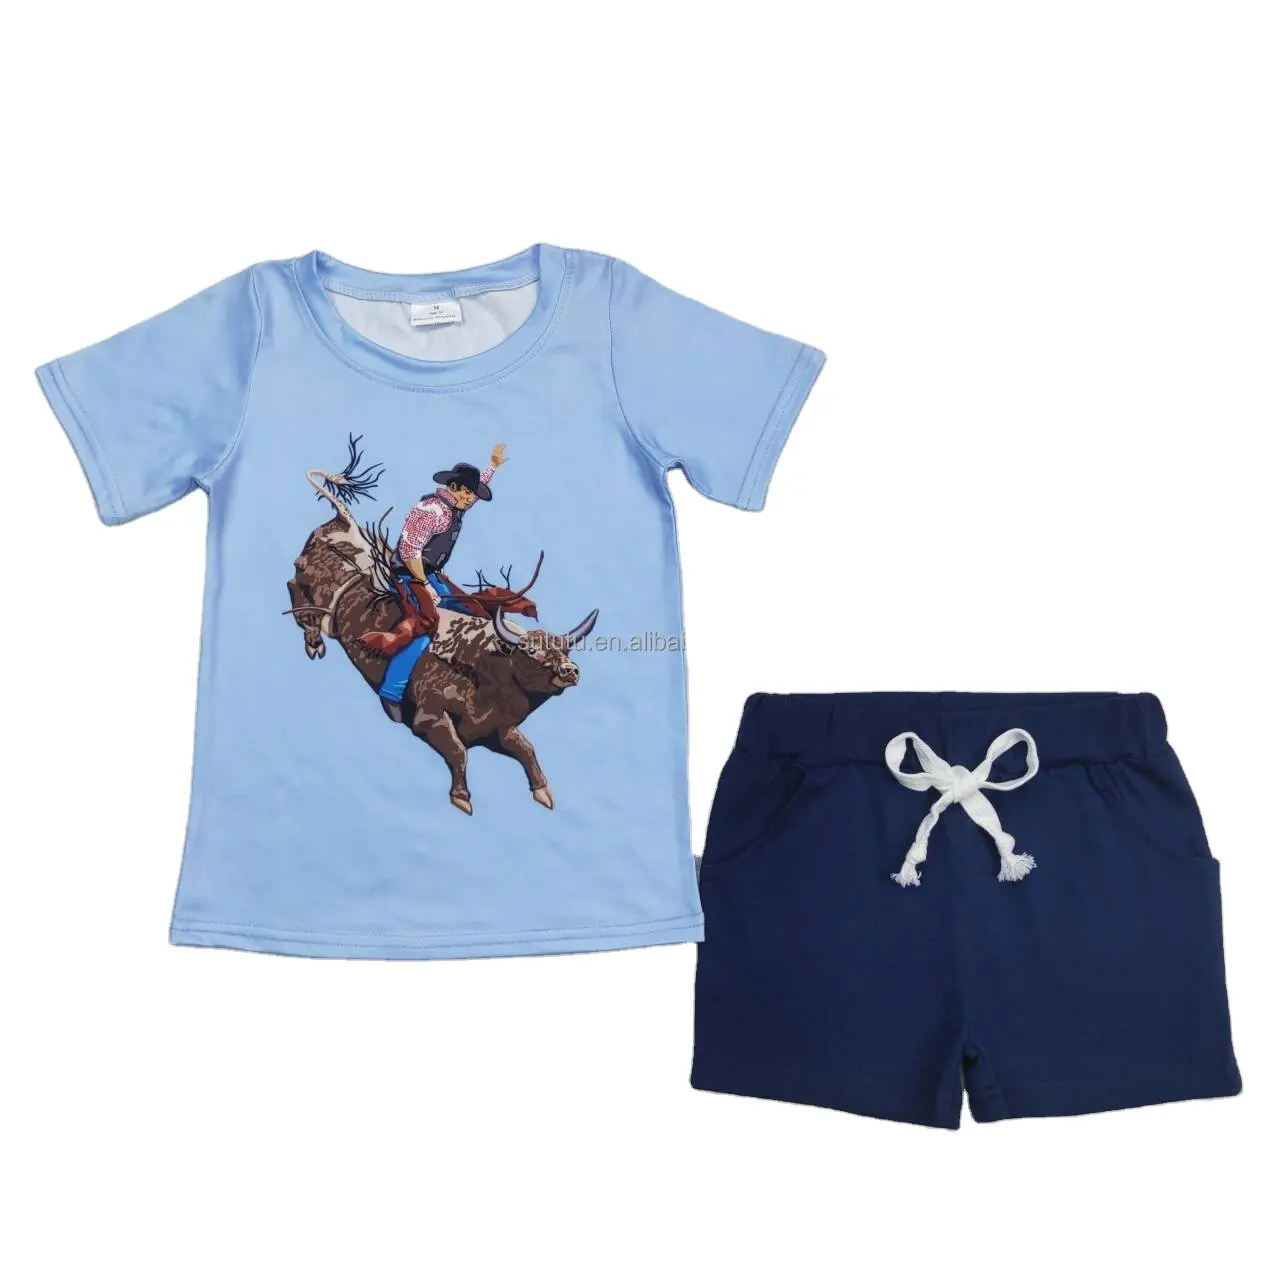 Roupas de cowboy de manga curta azul de alta qualidade, conjuntos de roupas para bebês e crianças, conjuntos de roupas para meninas